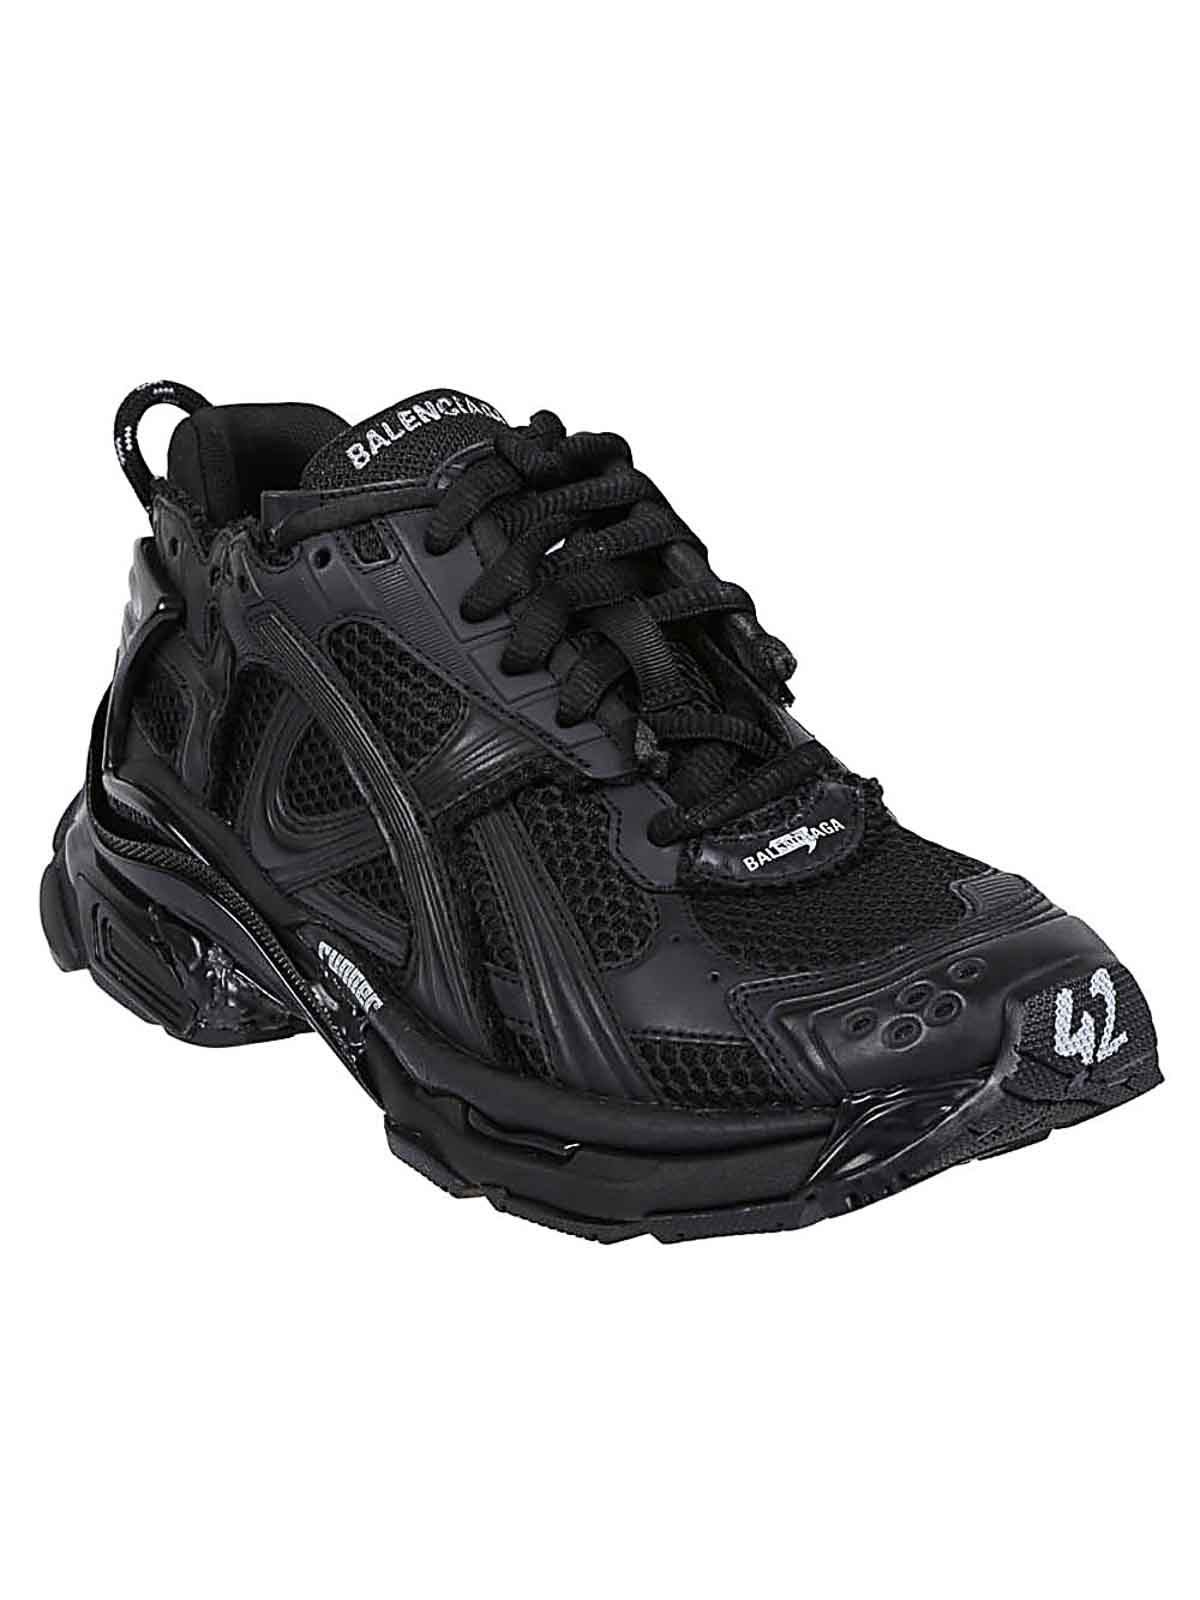 Shop Balenciaga Runner Sneakers In Black